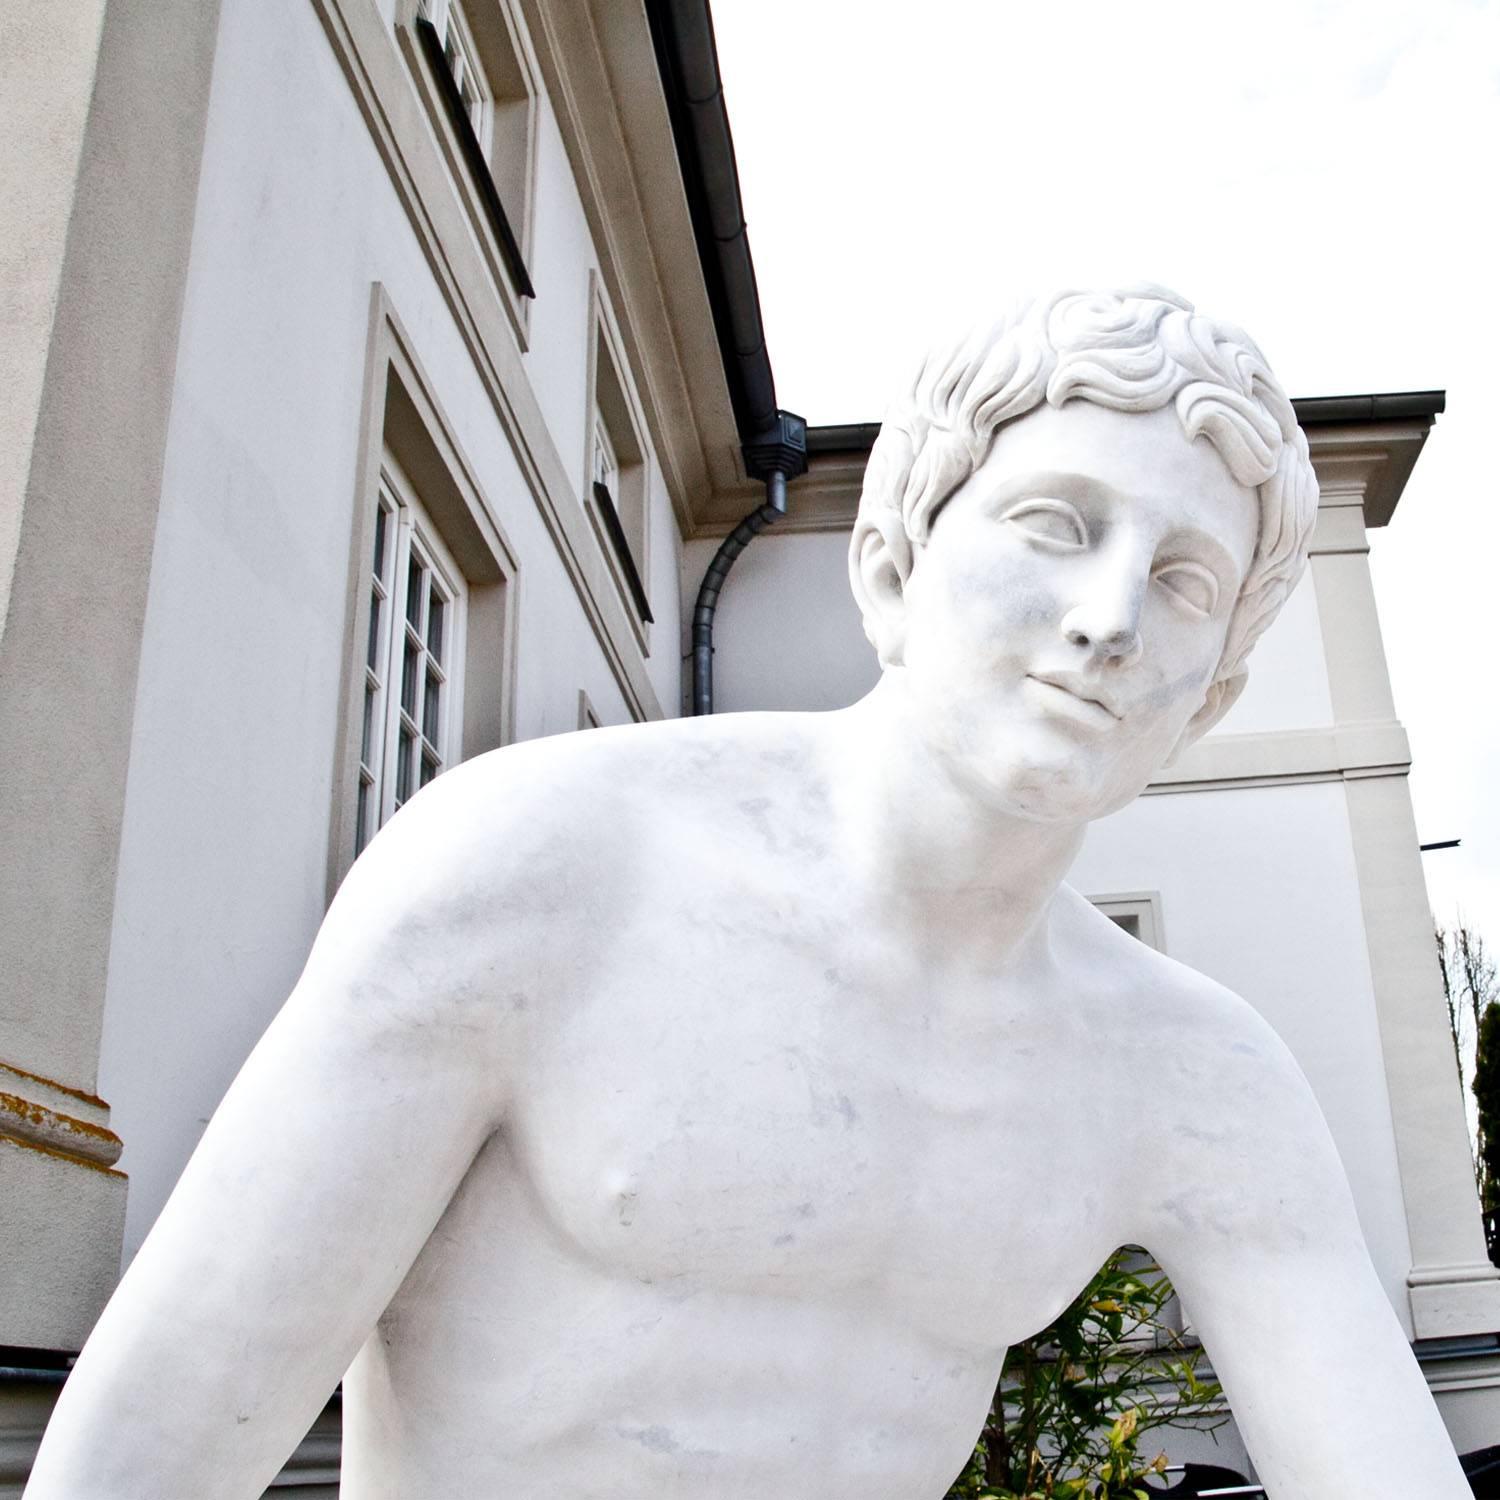 Sculpture en marbre grandeur nature de l'Hermès au repos de Lysippos. La sculpture a été sculptée à la main dans du marbre blanc et sa surface est fine.